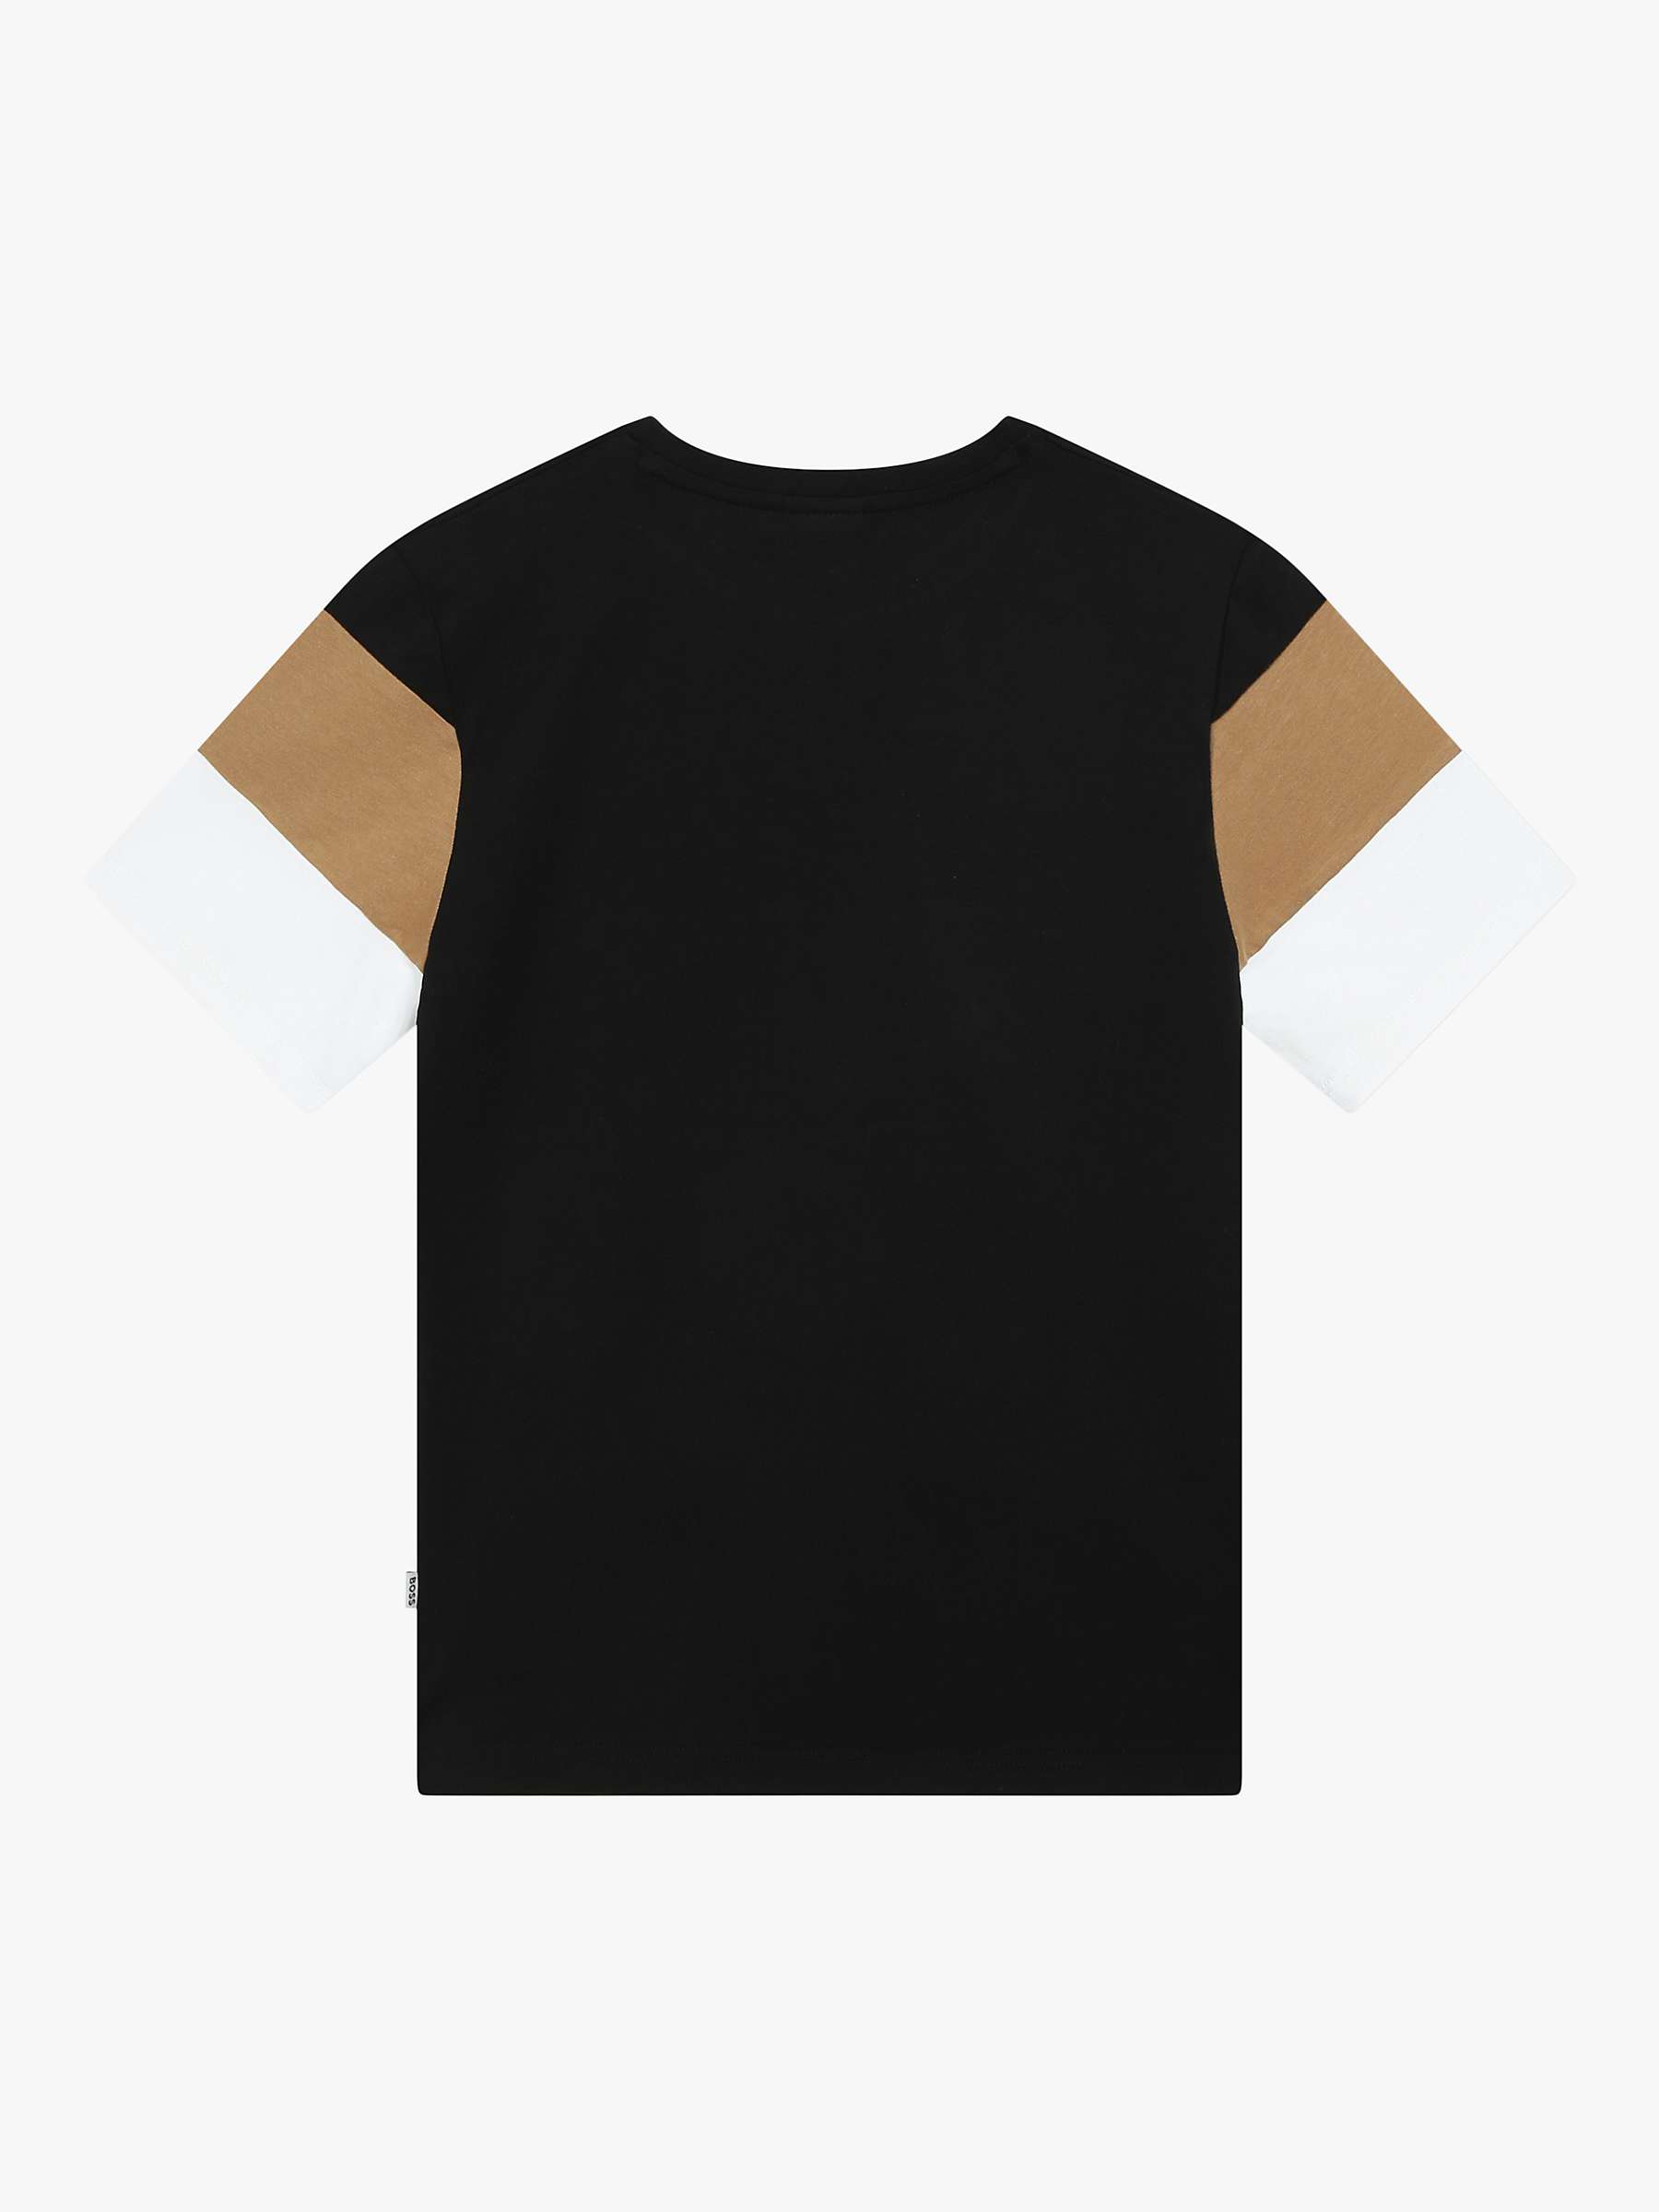 Buy BOSS Kid's Short Sleeve T-Shirt, Black/Multi Online at johnlewis.com